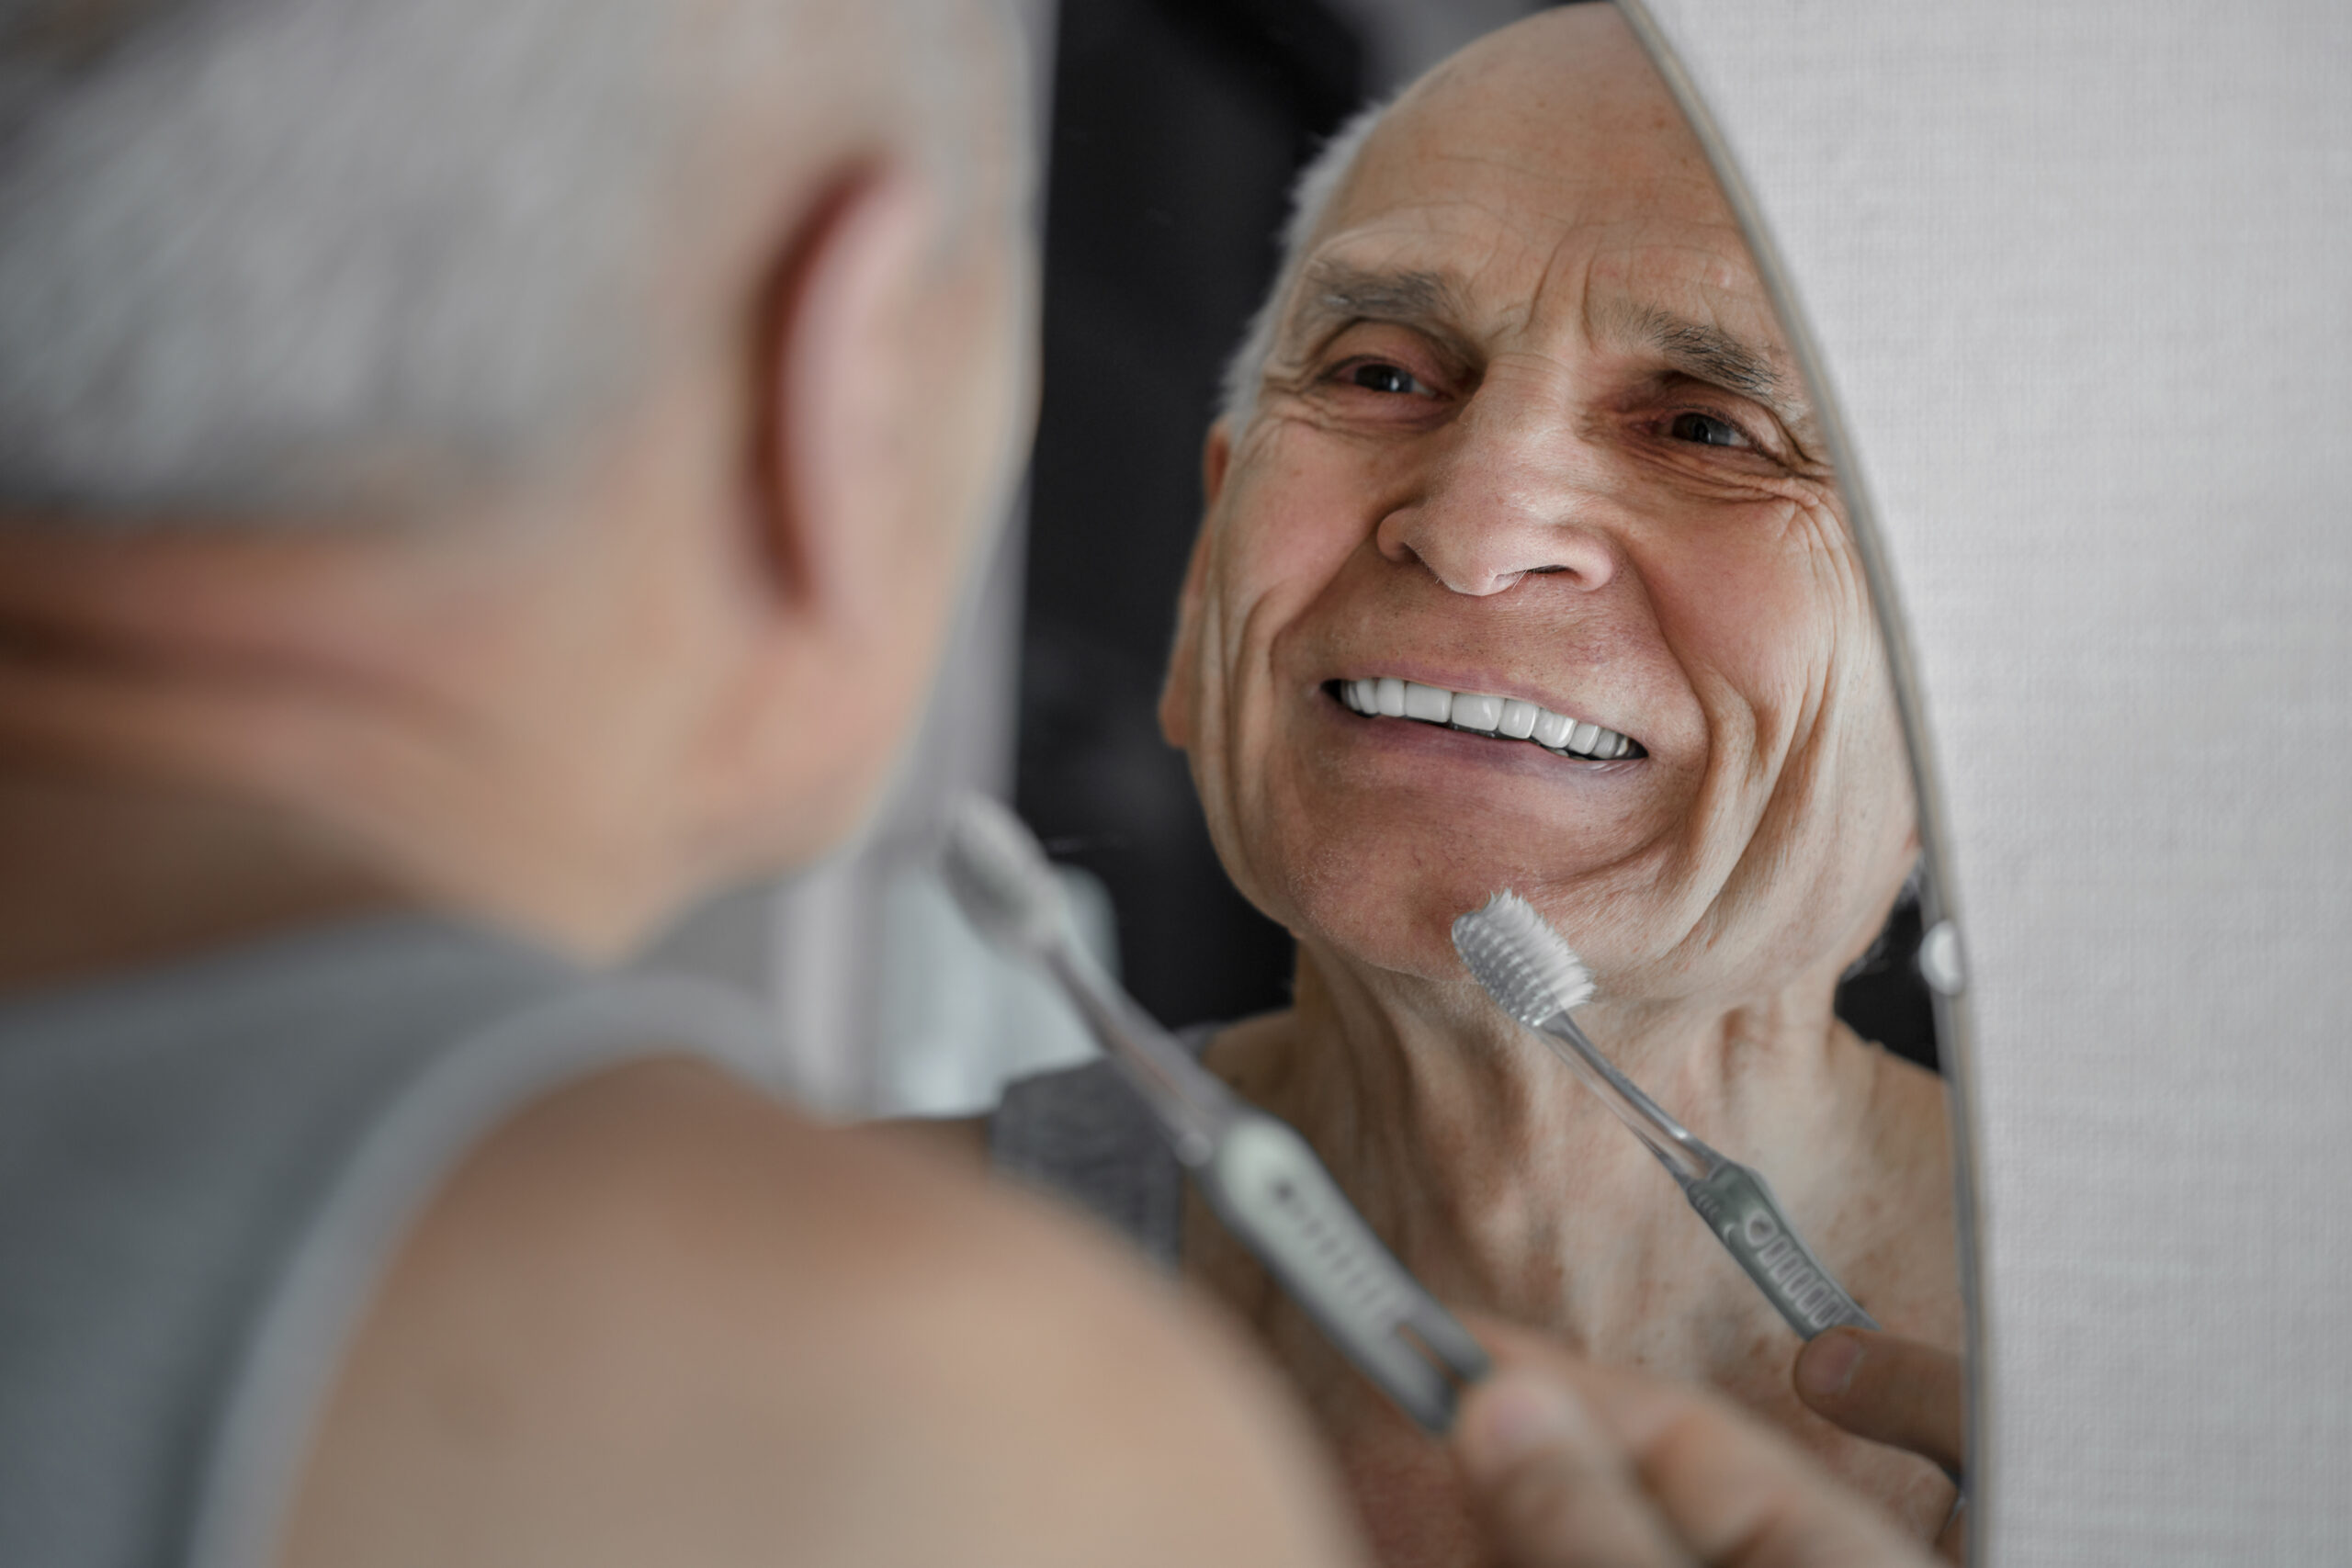 Smiling old man brushing his teeth with manual toothbrush